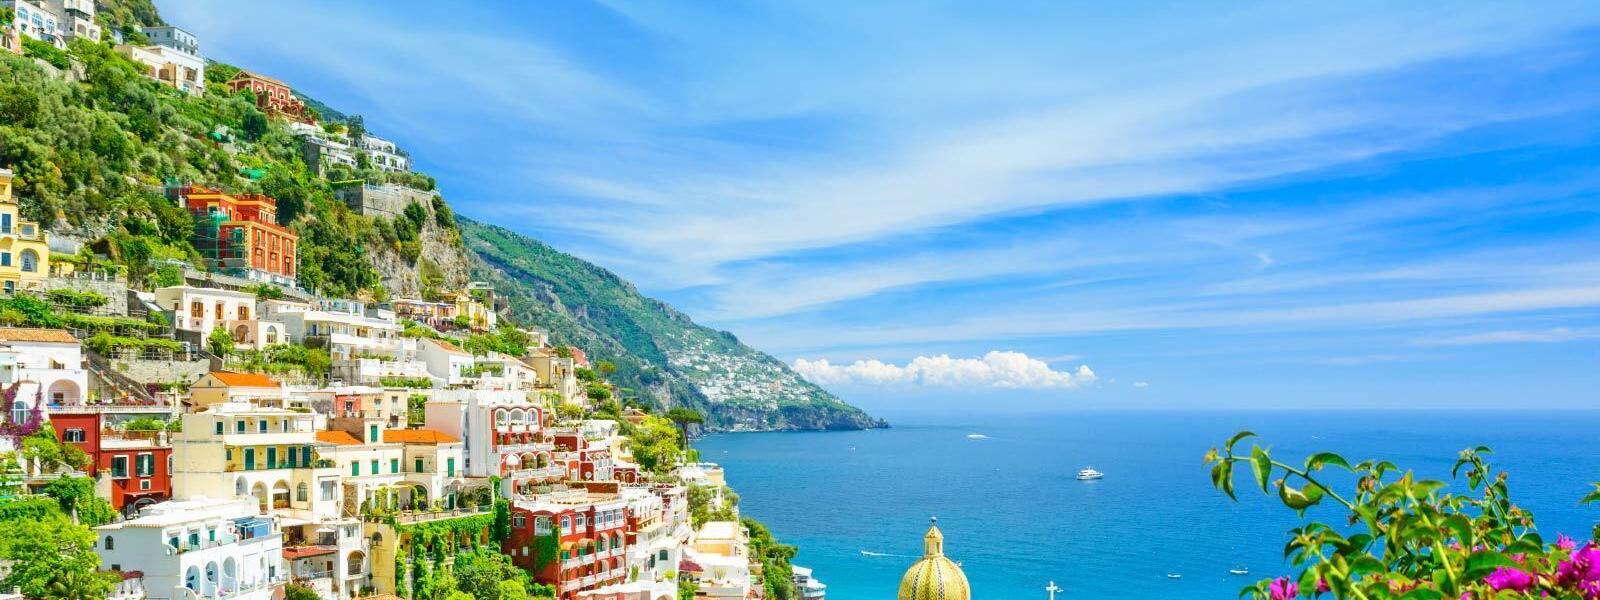 Ferienwohnungen und Ferienhäuser in Arco am Gardasee - atraveo